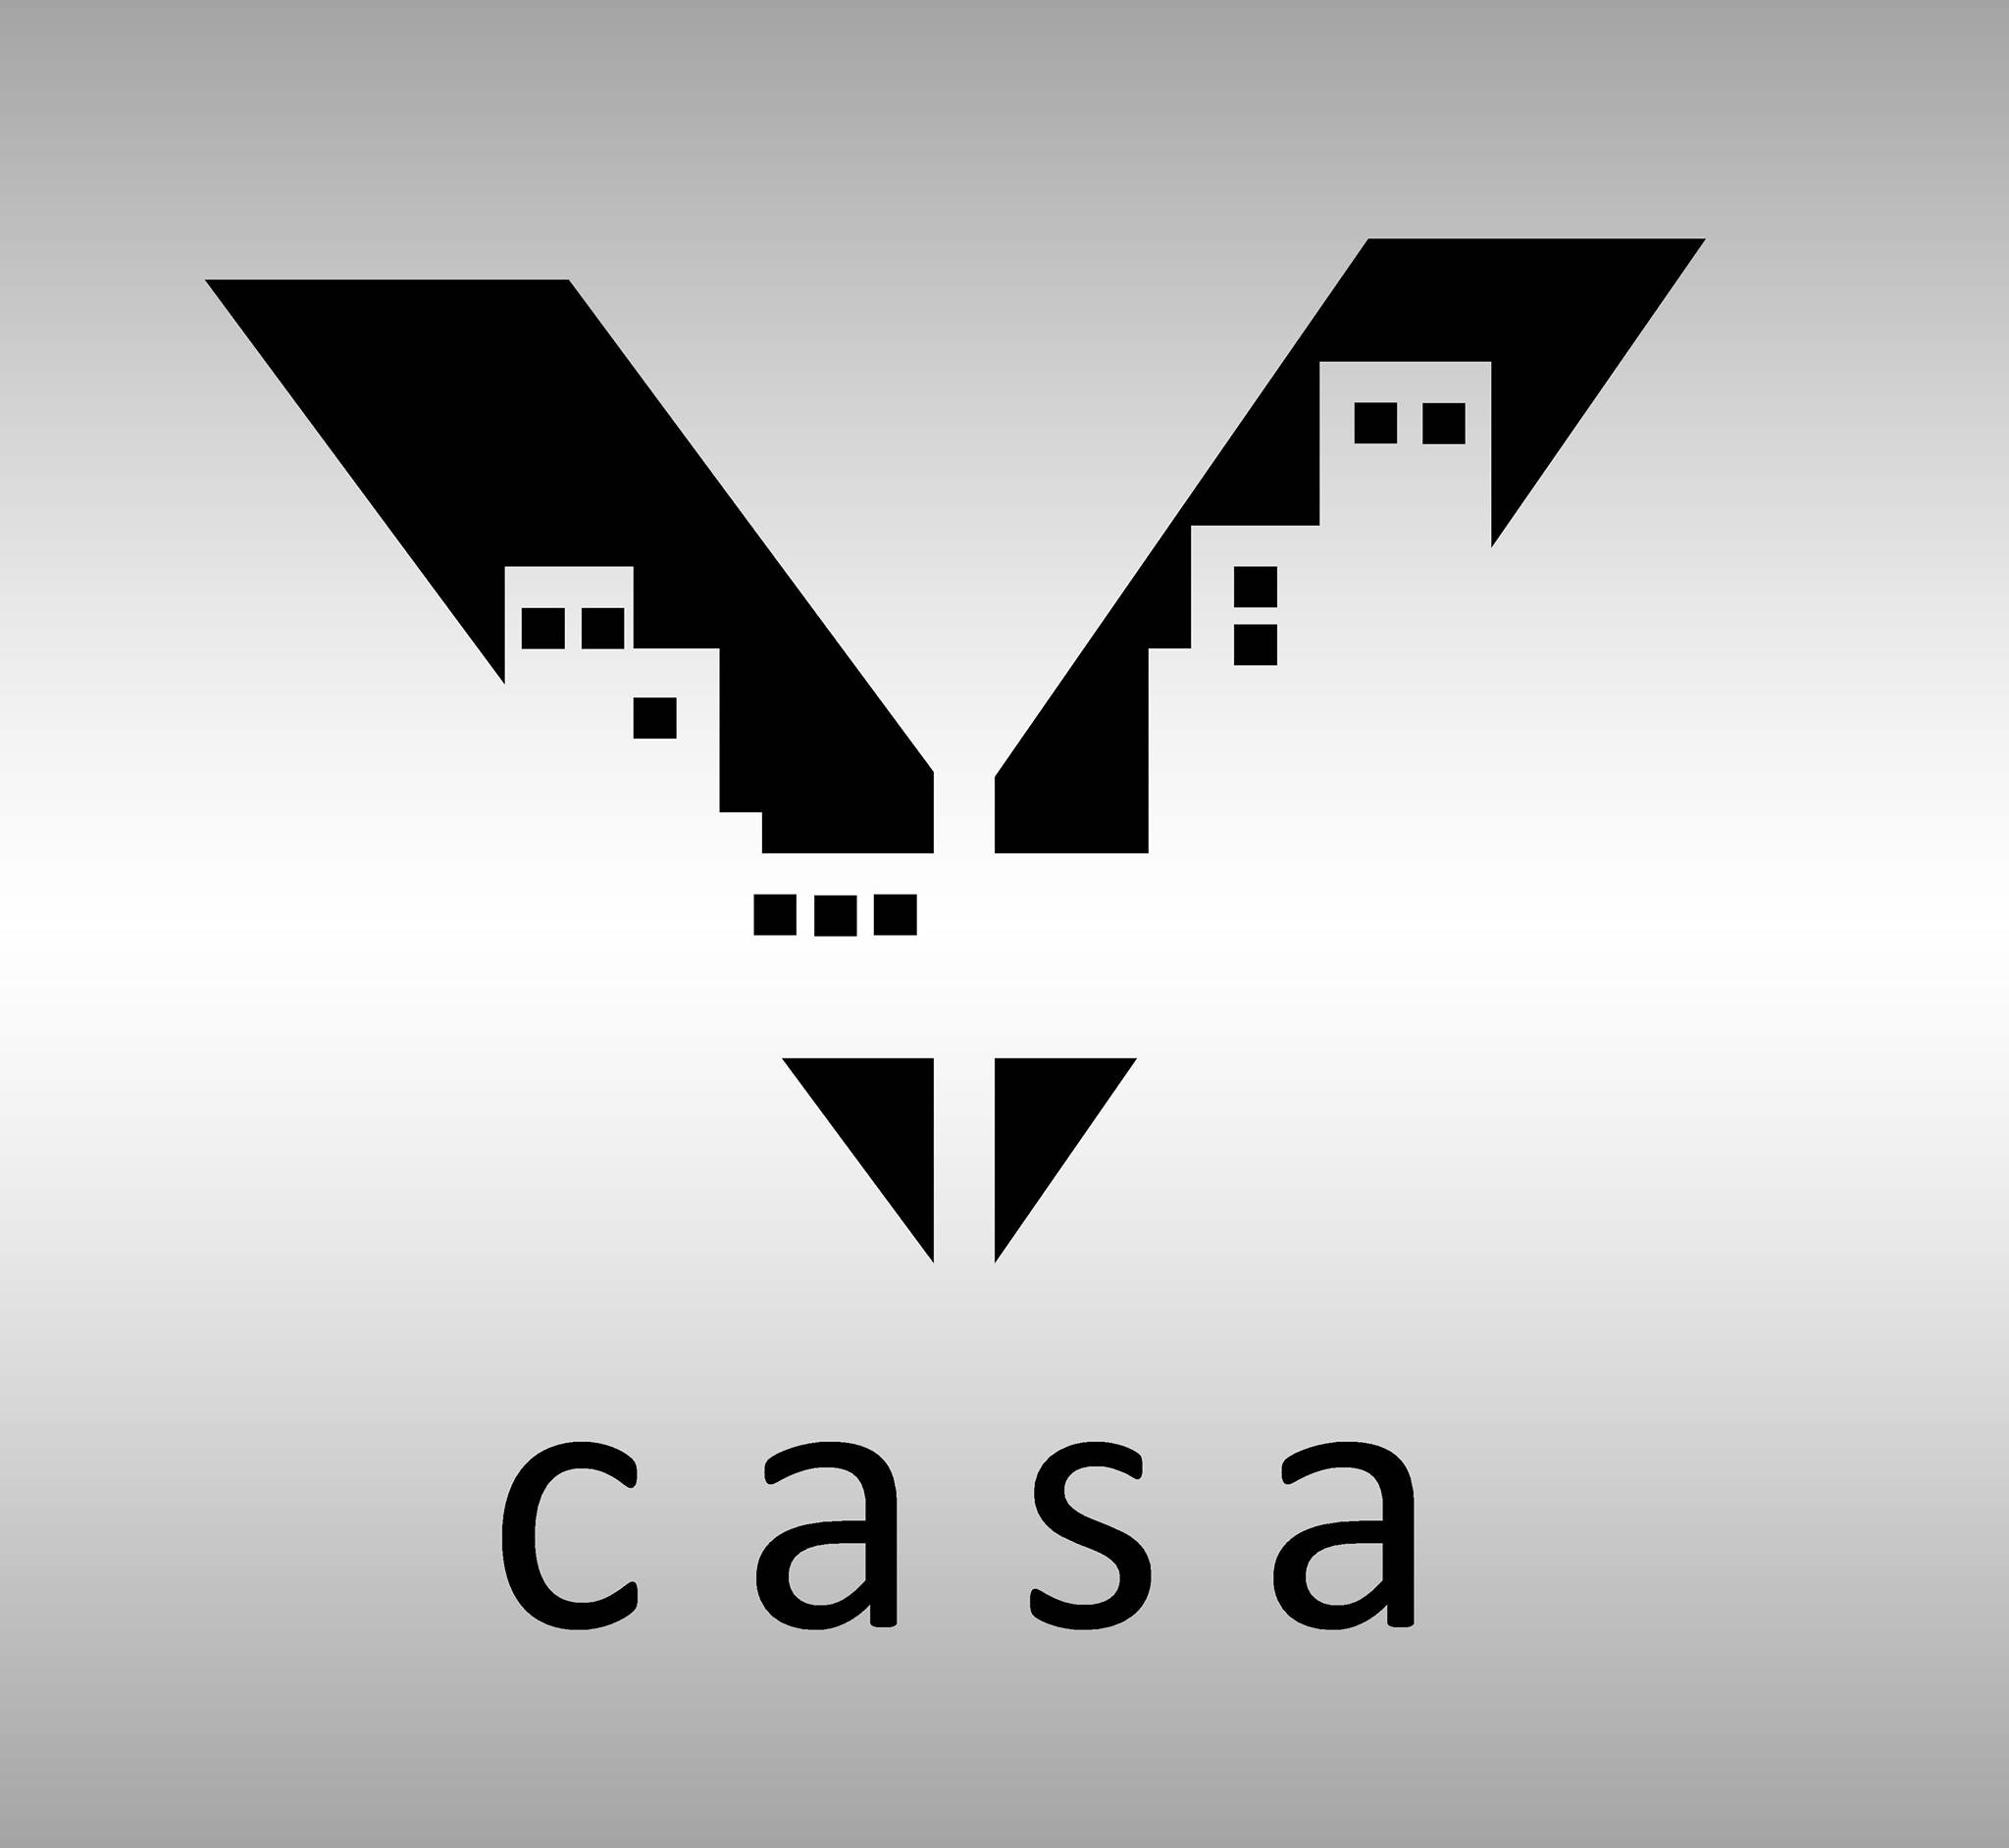 Vastucasa Architects & Interior Designer|Legal Services|Professional Services